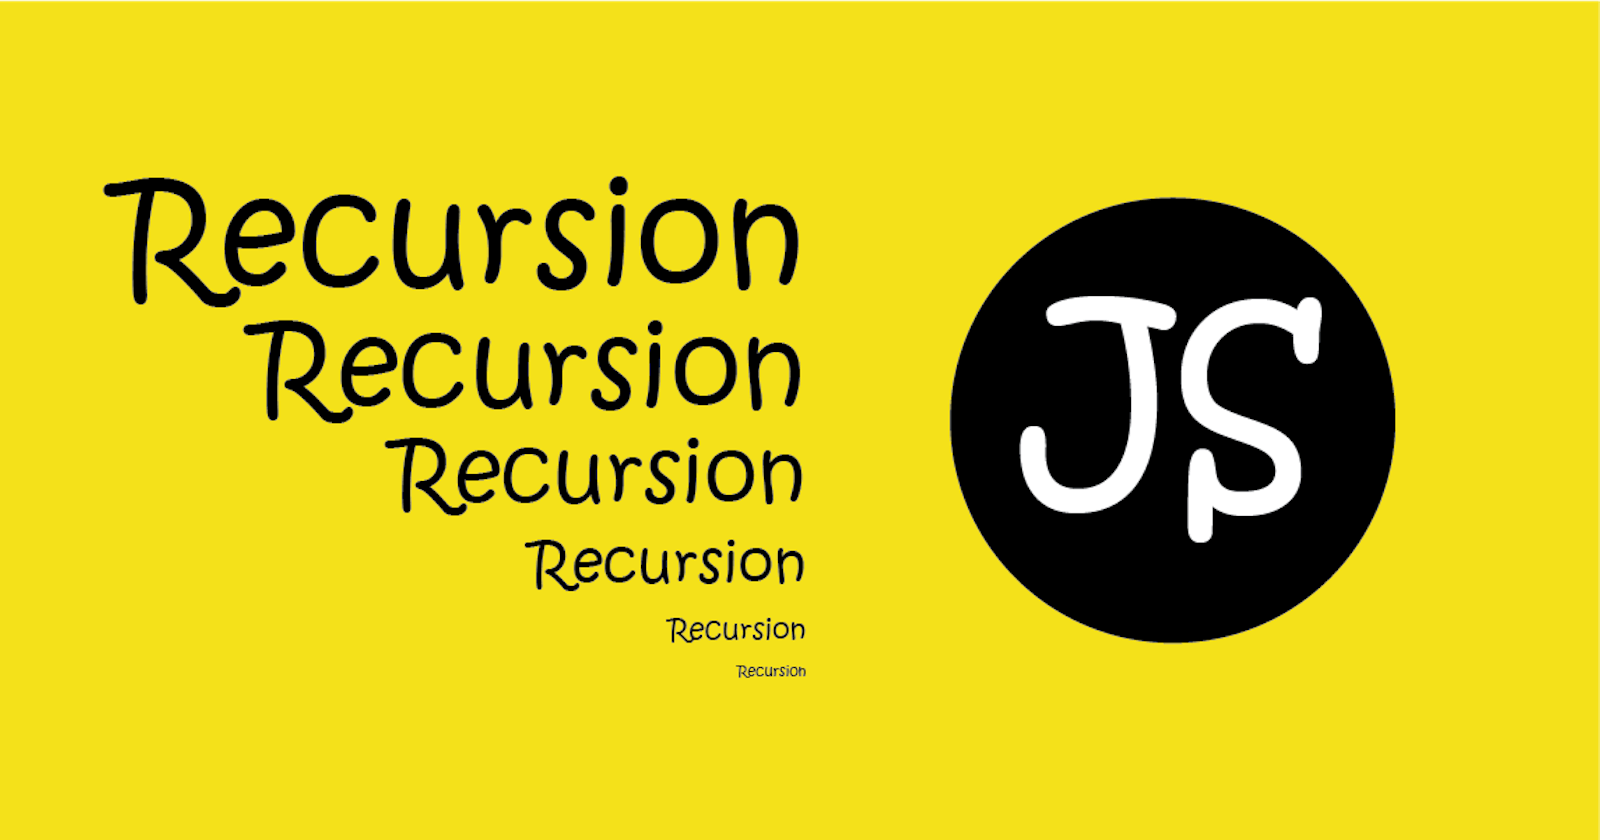 Recursion in JavaScript